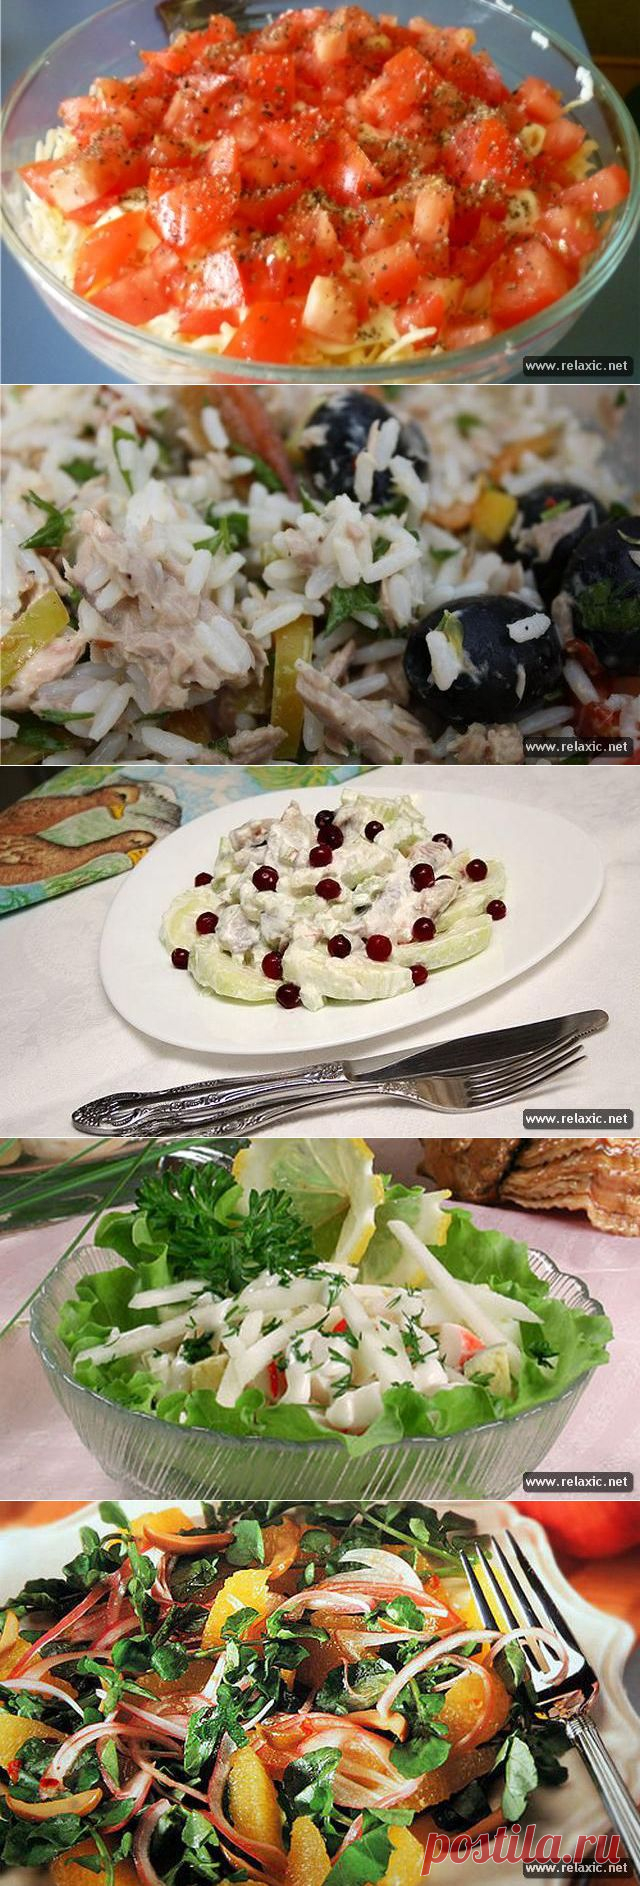 рецепты салатов | Релаксик